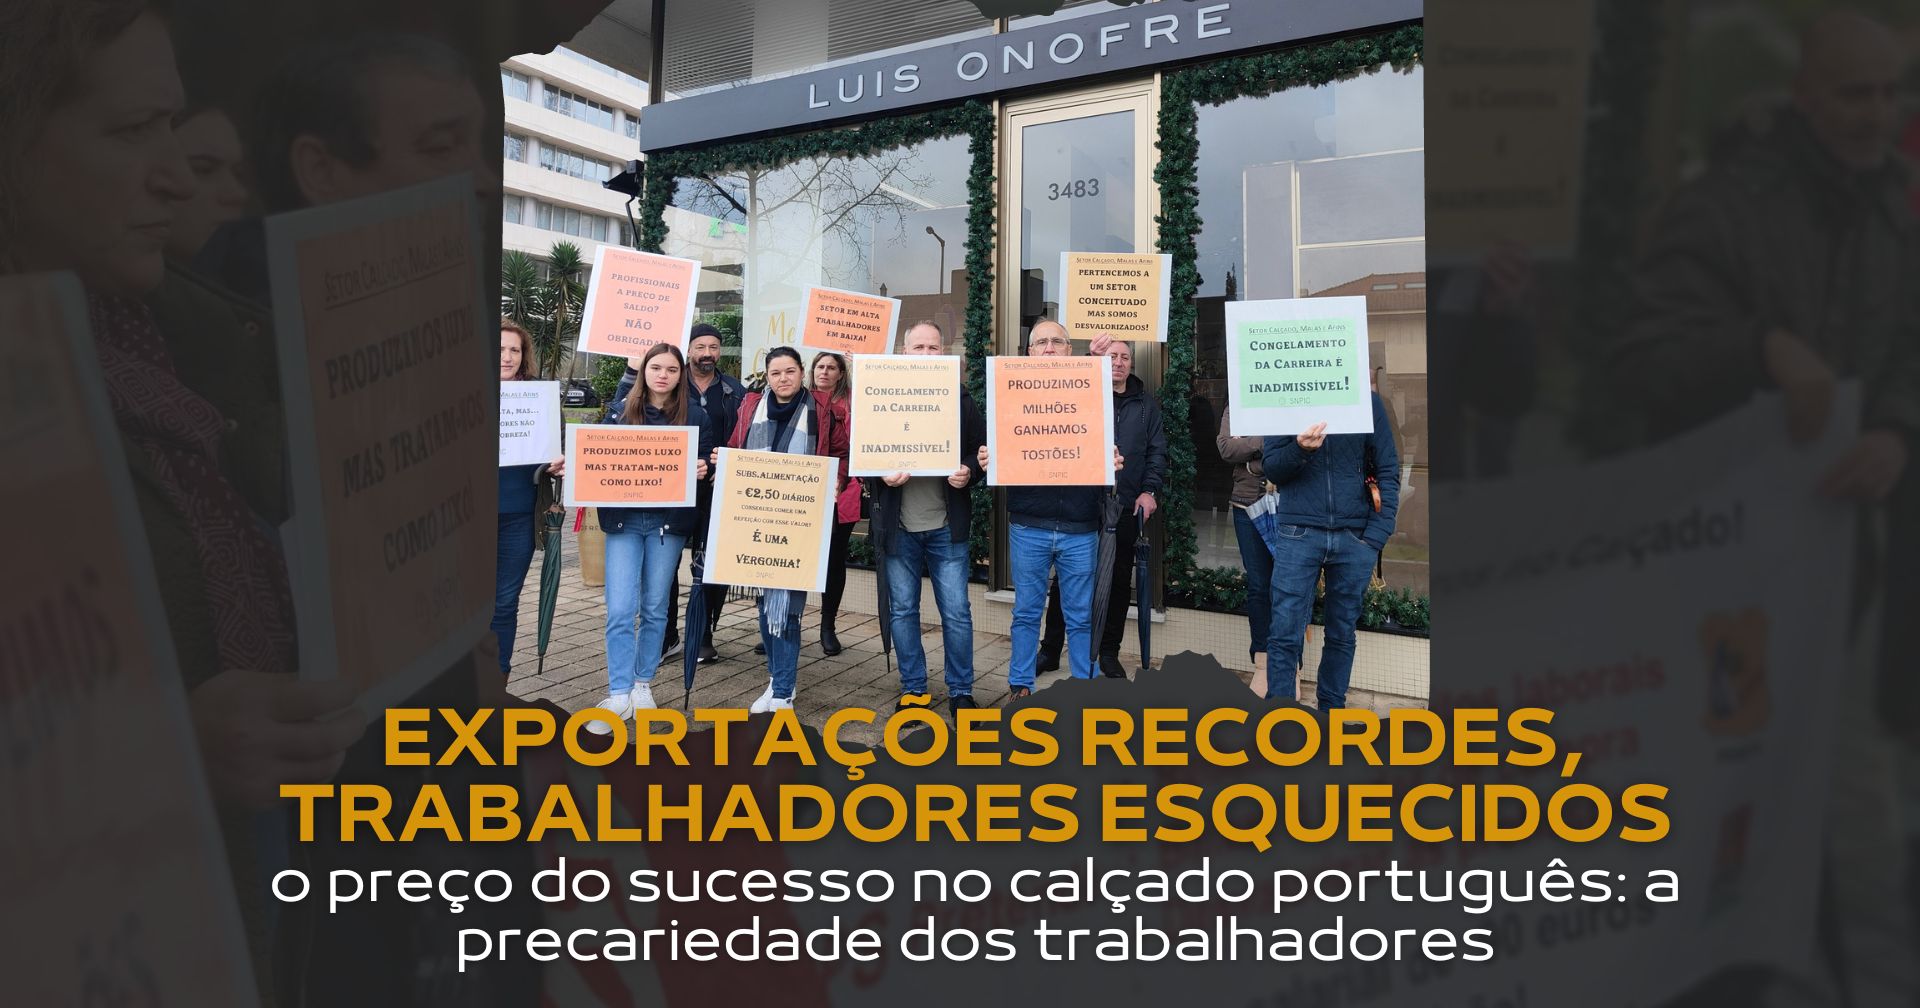 O preço do sucesso no calçado português: a precariedade dos trabalhadores